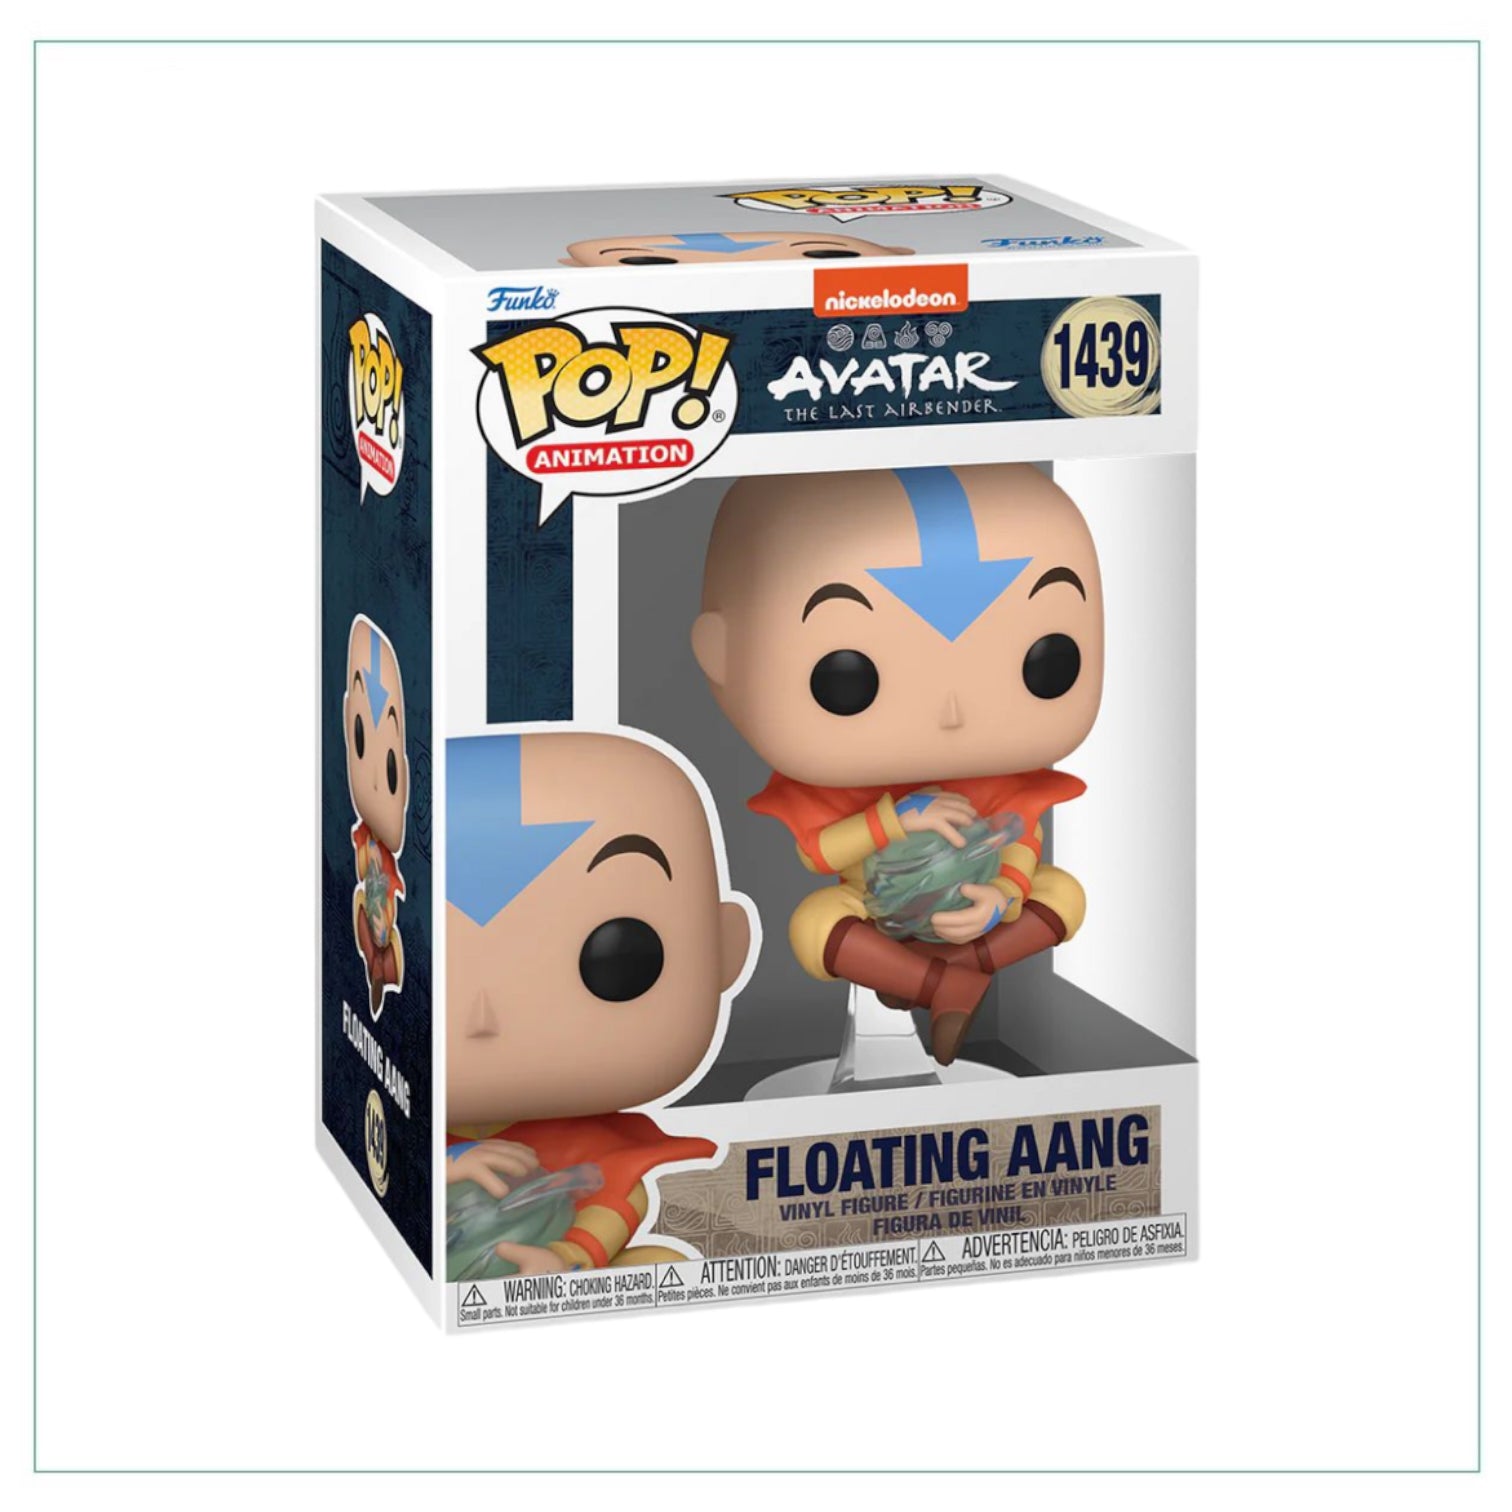 Floating Aang #1439 Funko Pop! Avatar The Last Airbender